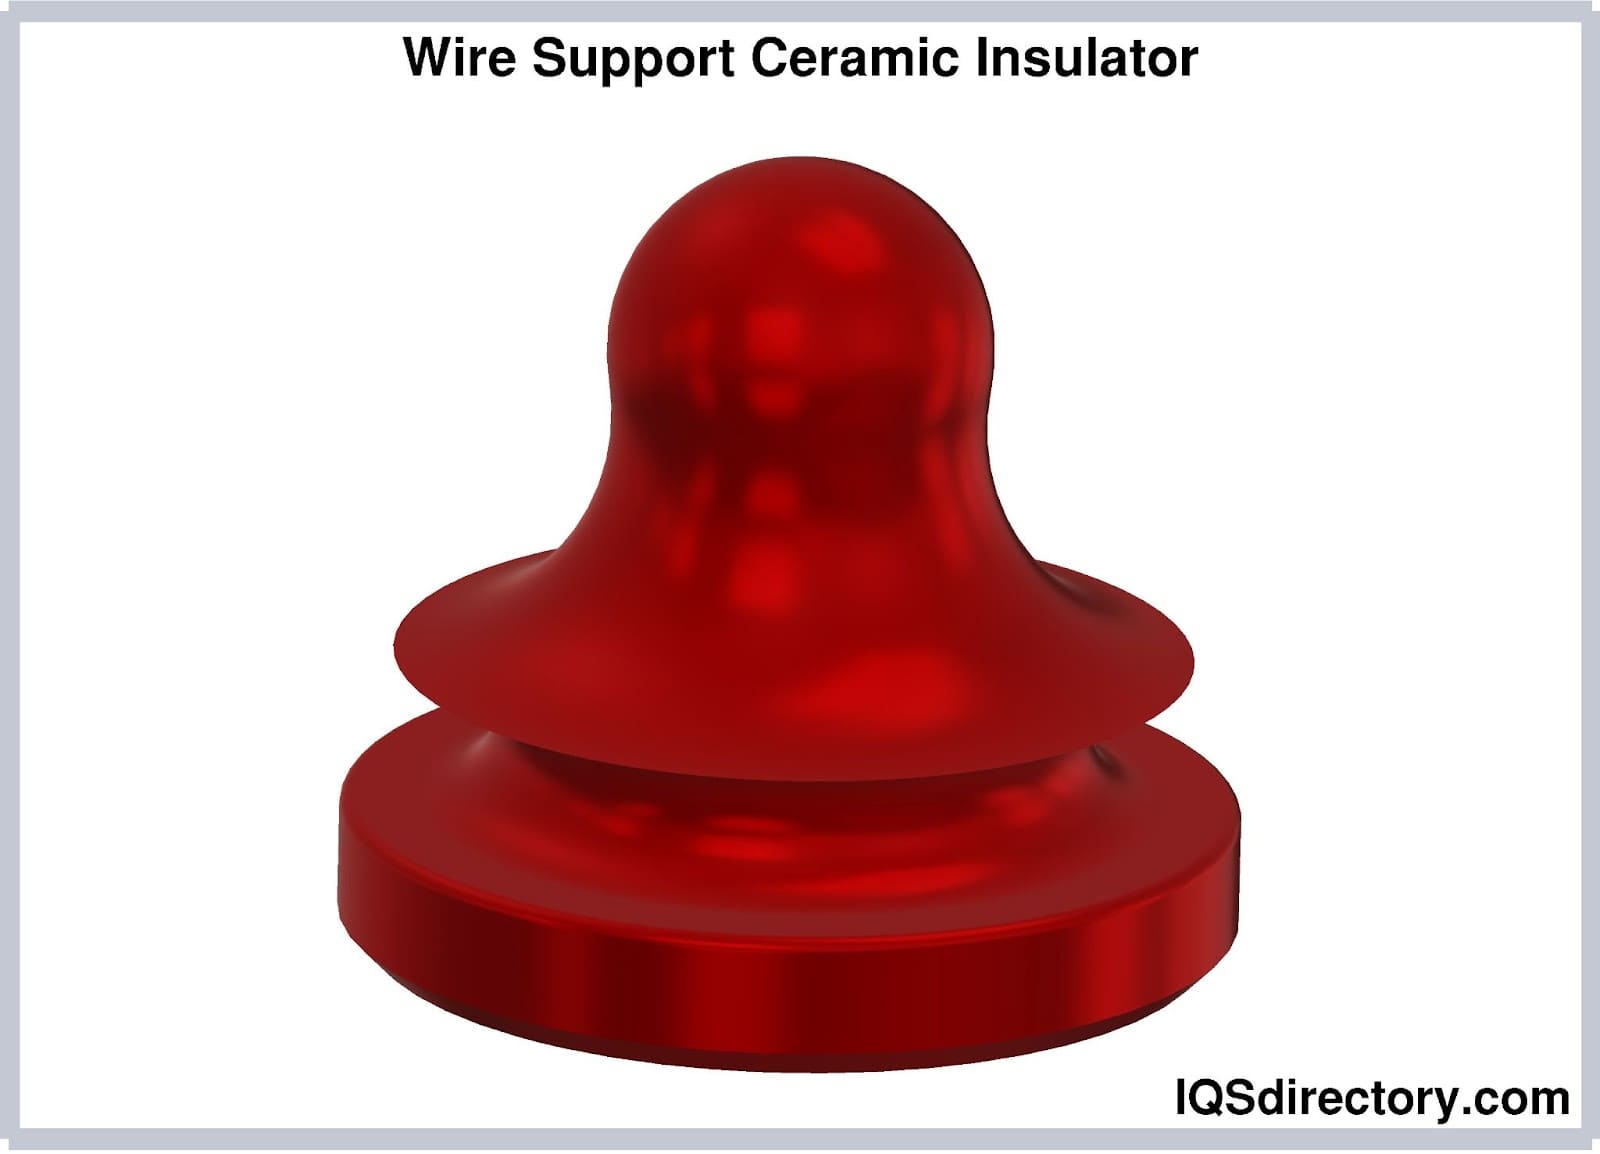 Wire Support Ceramic Insulator